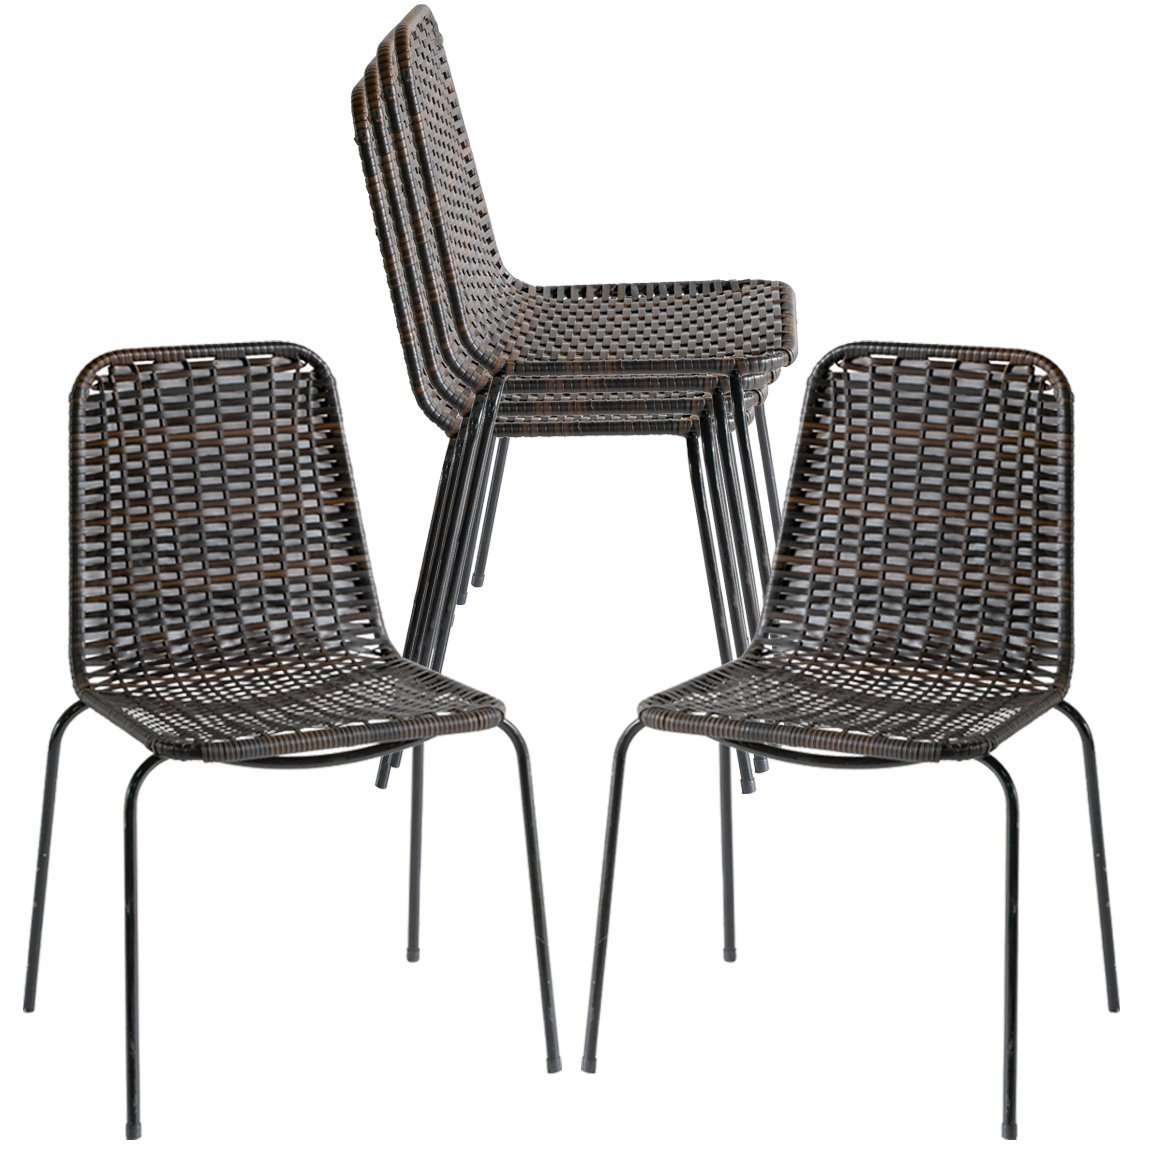 6 Cadeiras Topázio em Fibra Sintética com Proteção UV para Área, Sacada, Jardim - Pedra Ferro